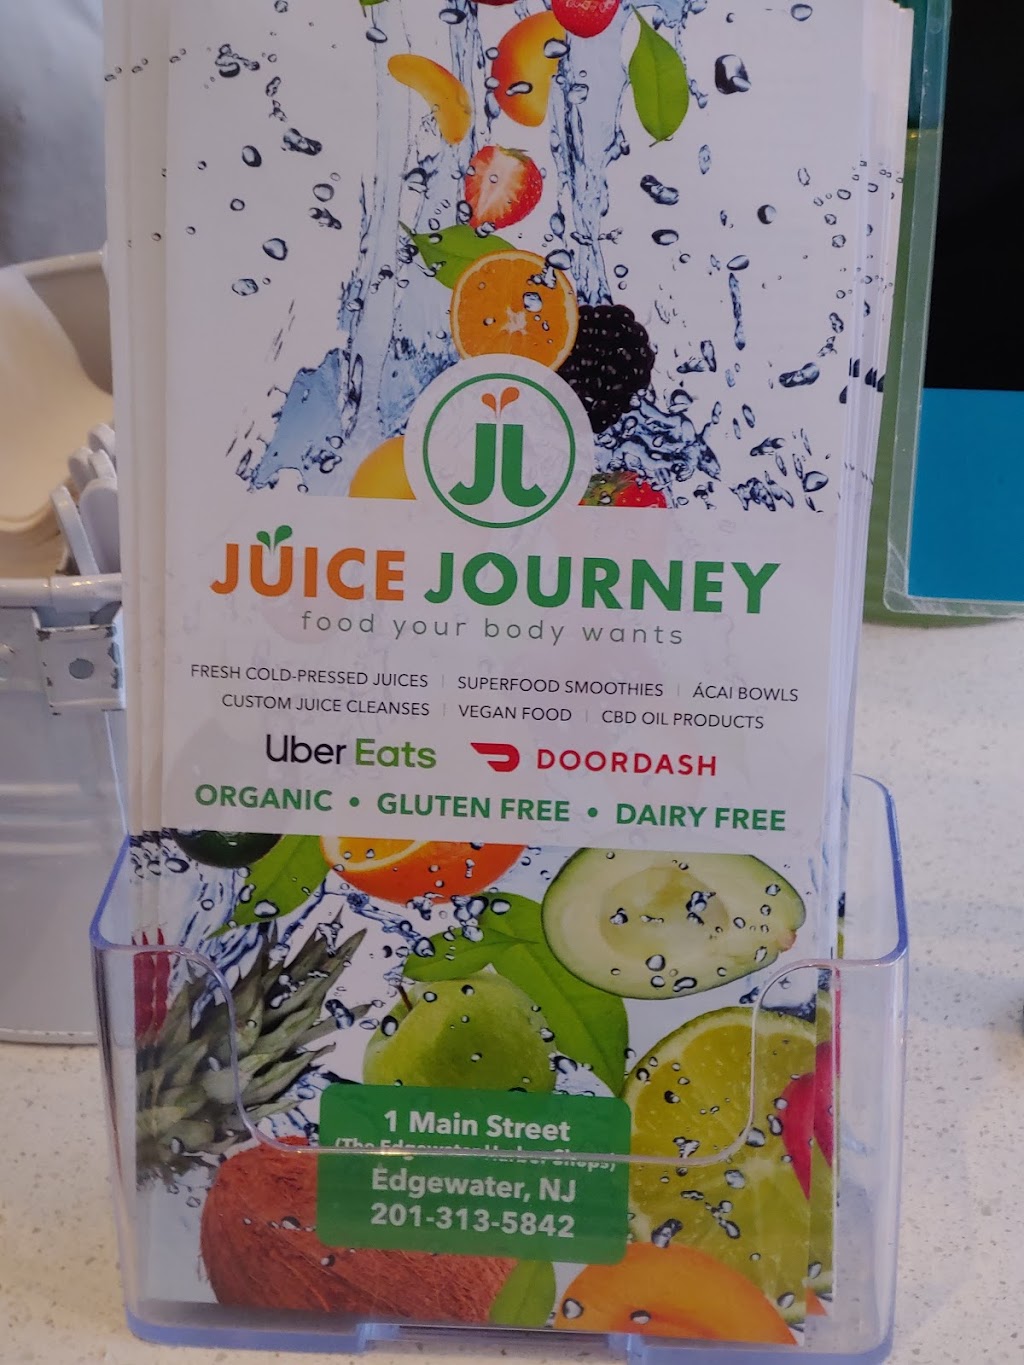 Juice Journey Cafe | Photo 5 of 10 | Address: 1 Main St, Edgewater, NJ 07020, USA | Phone: (201) 313-5842